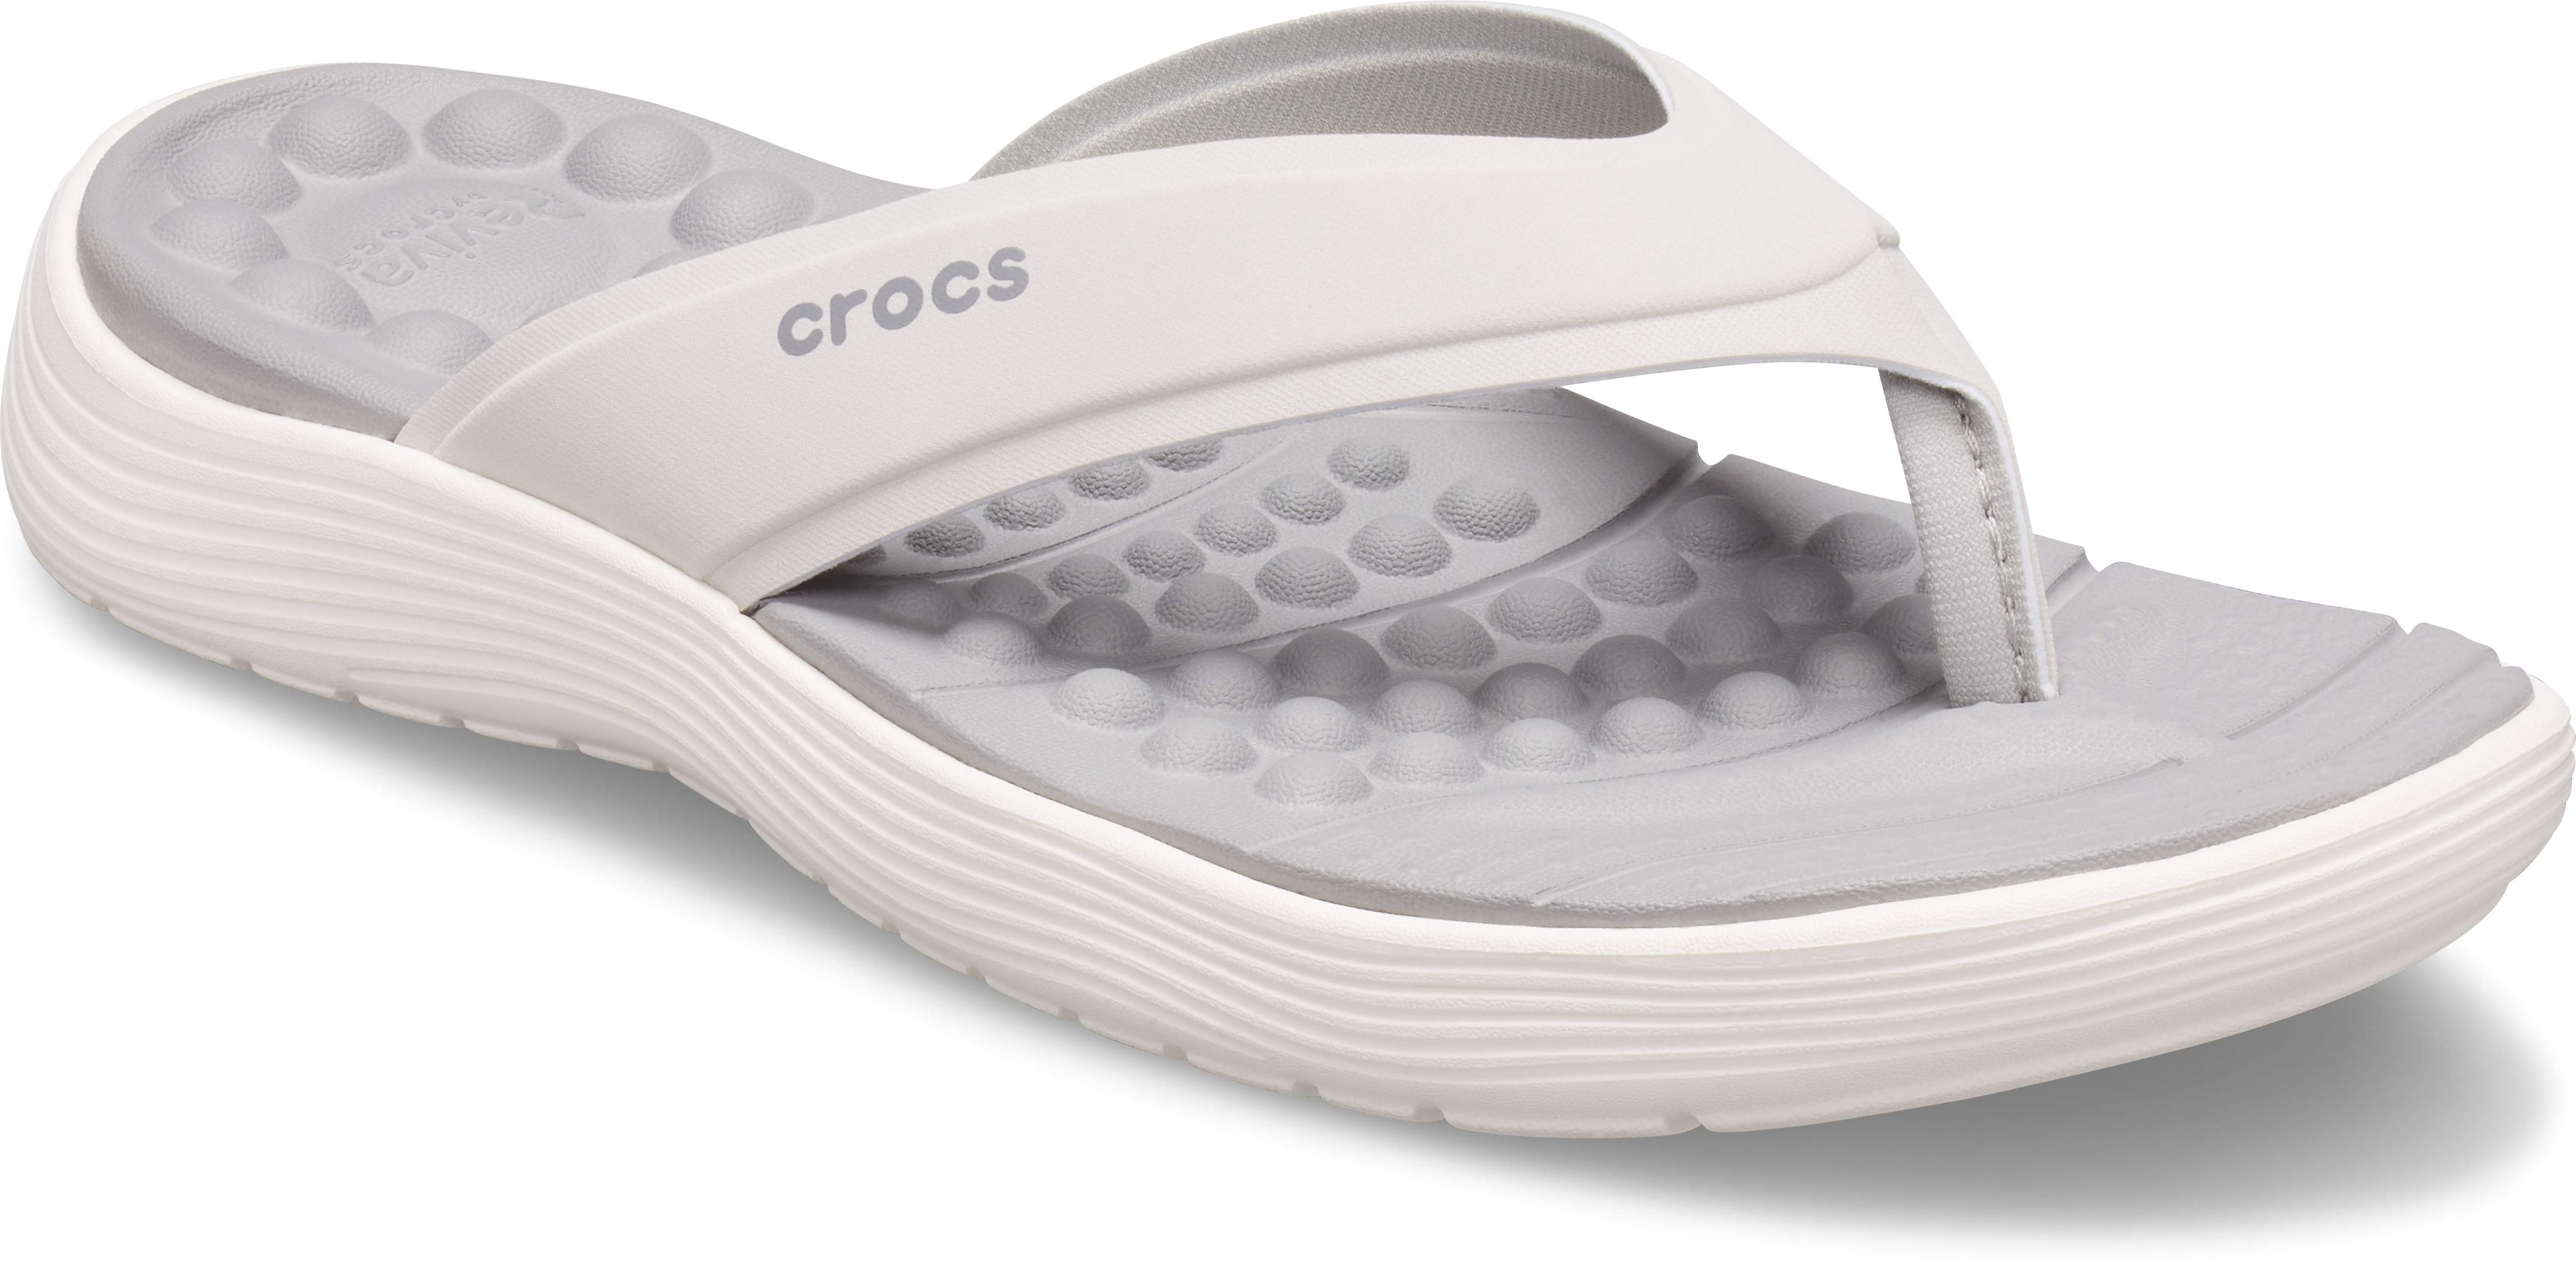 crocs reviva review